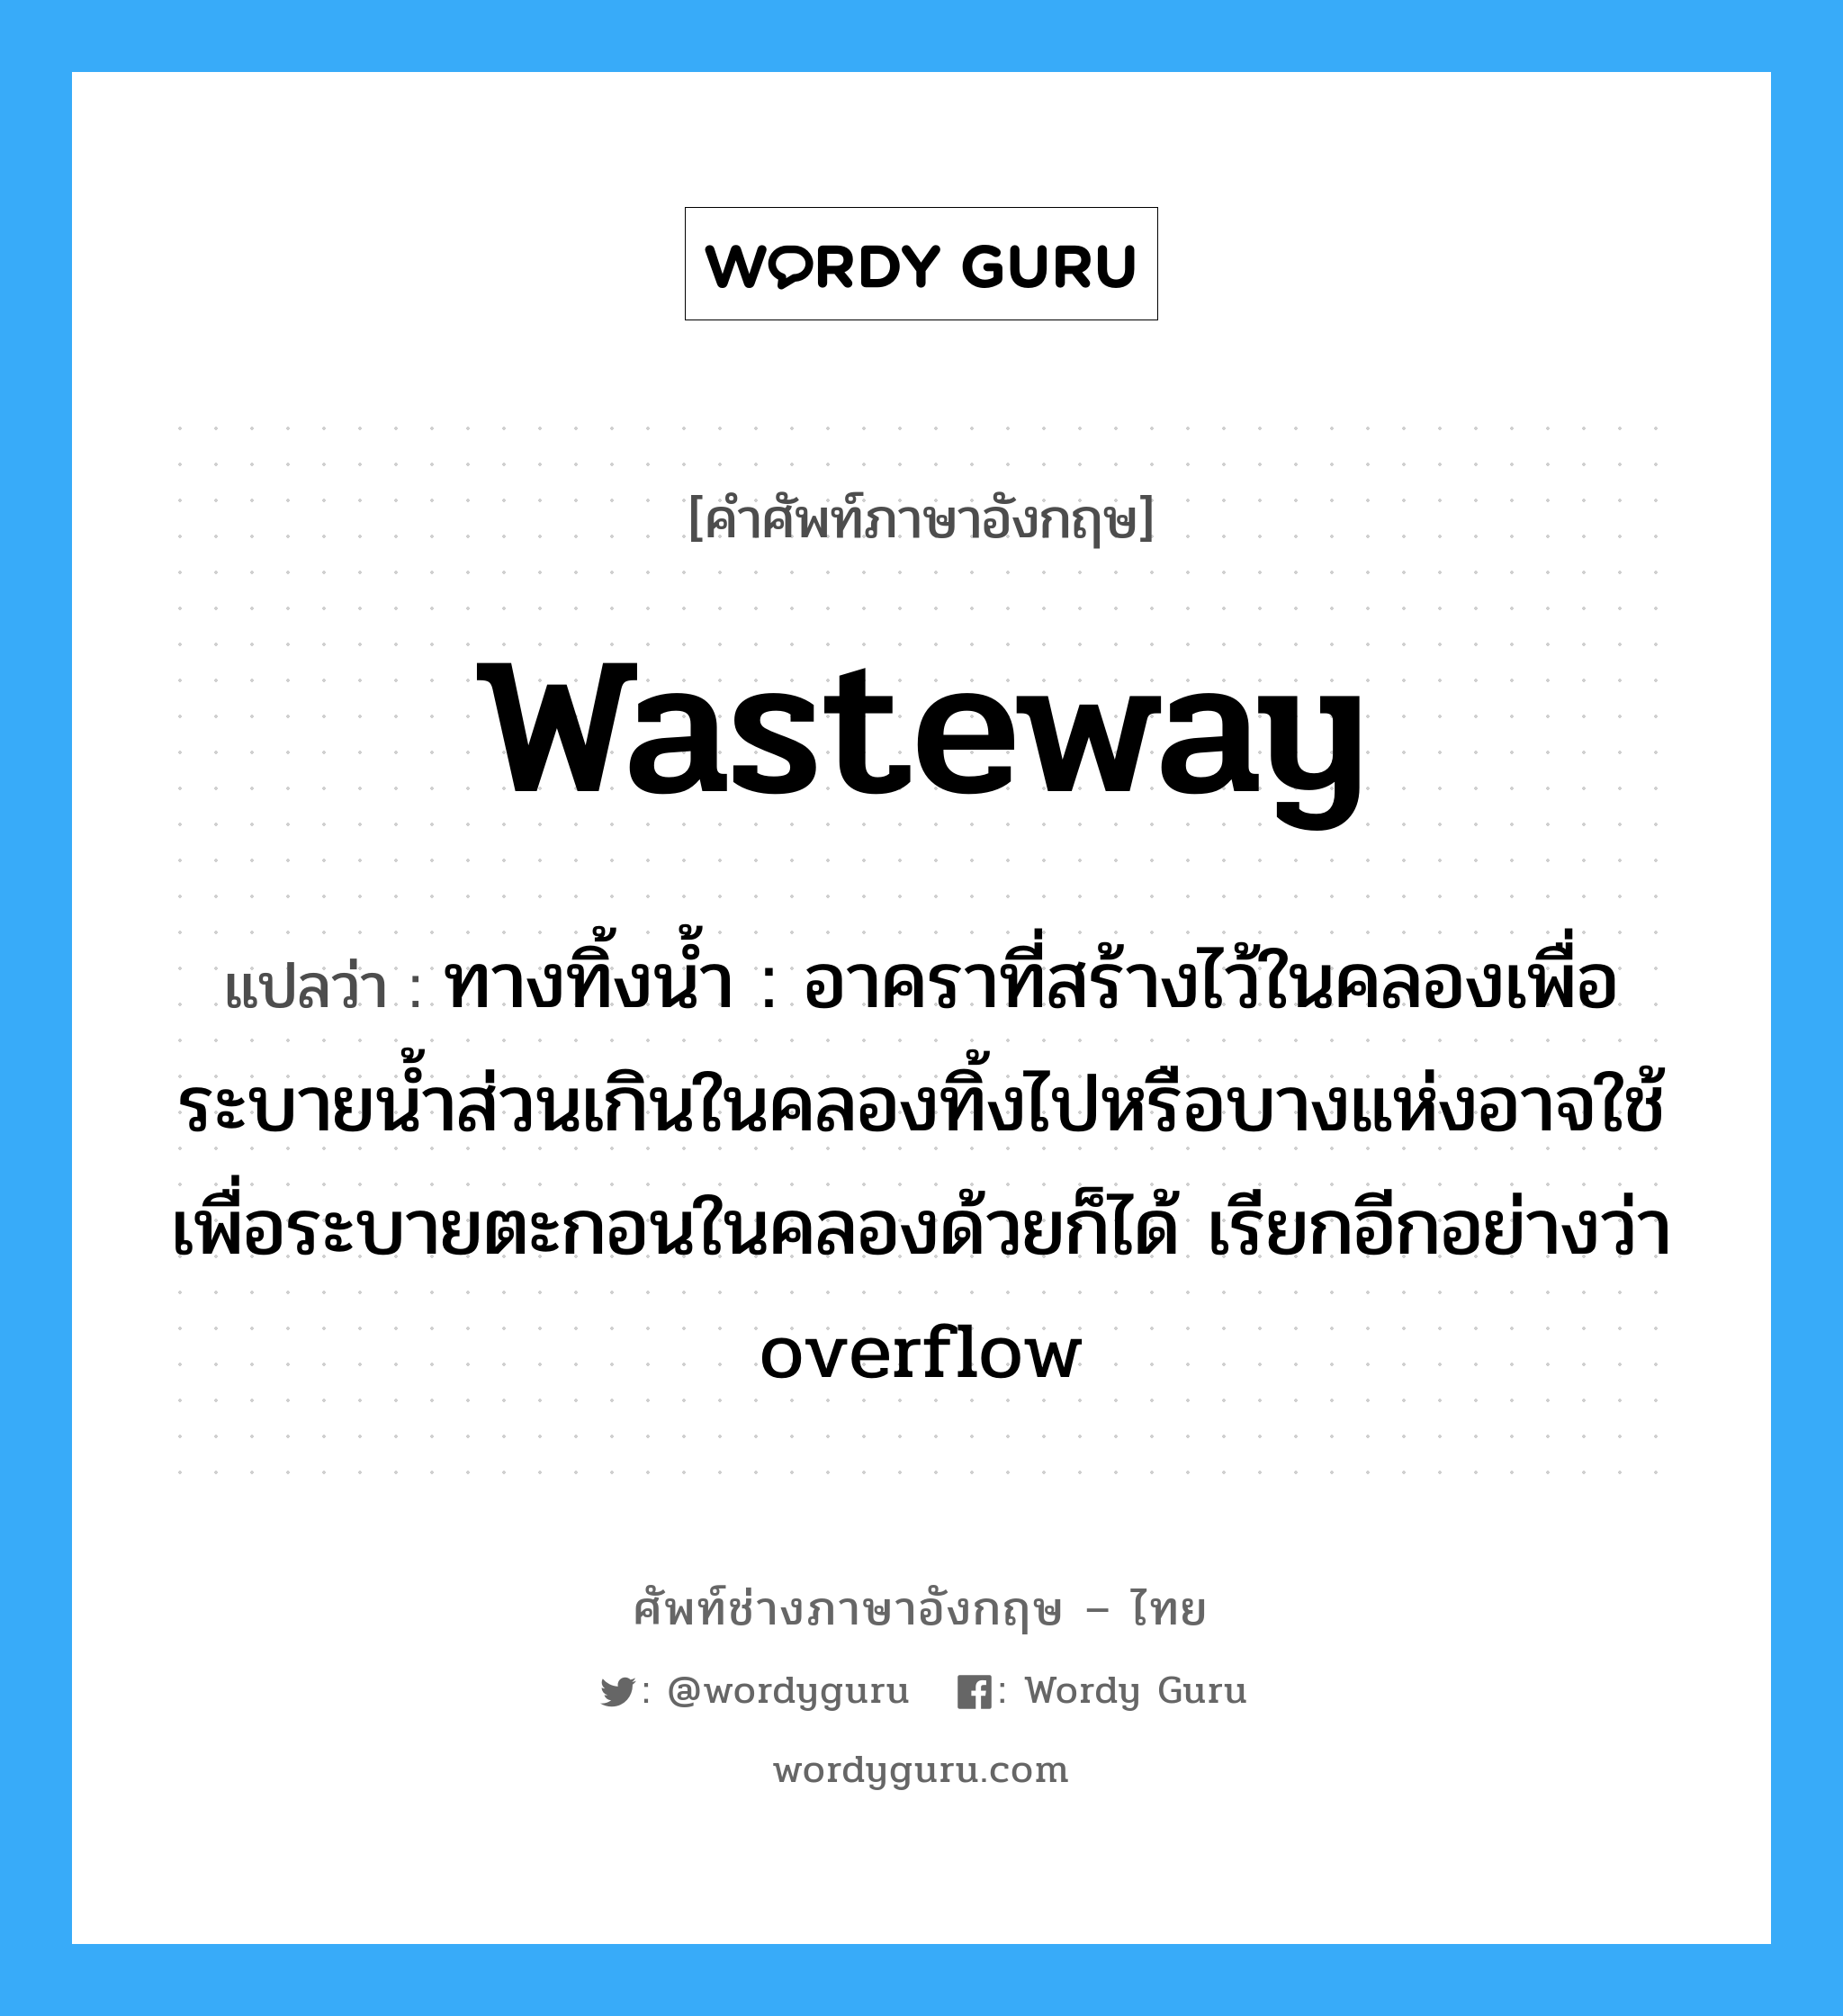 ทางทิ้งน้ำ : อาคราที่สร้างไว้ในคลองเพื่อระบายน้ำส่วนเกินในคลองทิ้งไปหรือบางแห่งอาจใช้เพื่อระบายตะกอนในคลองด้วยก็ได้ เรียกอีกอย่างว่า overflow ภาษาอังกฤษ?, คำศัพท์ช่างภาษาอังกฤษ - ไทย ทางทิ้งน้ำ : อาคราที่สร้างไว้ในคลองเพื่อระบายน้ำส่วนเกินในคลองทิ้งไปหรือบางแห่งอาจใช้เพื่อระบายตะกอนในคลองด้วยก็ได้ เรียกอีกอย่างว่า overflow คำศัพท์ภาษาอังกฤษ ทางทิ้งน้ำ : อาคราที่สร้างไว้ในคลองเพื่อระบายน้ำส่วนเกินในคลองทิ้งไปหรือบางแห่งอาจใช้เพื่อระบายตะกอนในคลองด้วยก็ได้ เรียกอีกอย่างว่า overflow แปลว่า wasteway